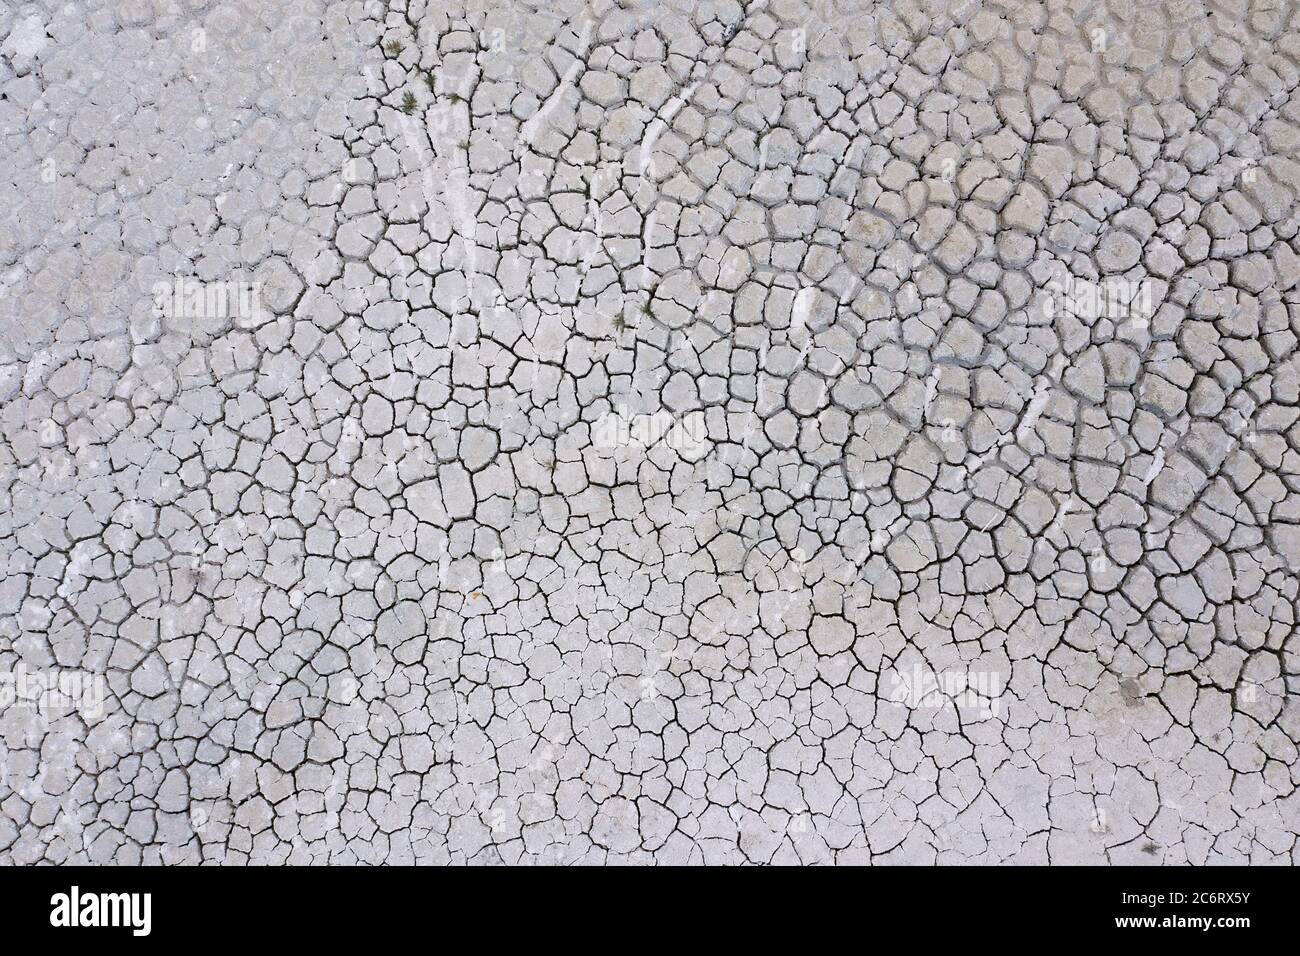 Vue aérienne d'une terre sèche, campagne d'été sécheresse. Le réchauffement de la planète et le changement climatique. Photo de haute qualité Banque D'Images